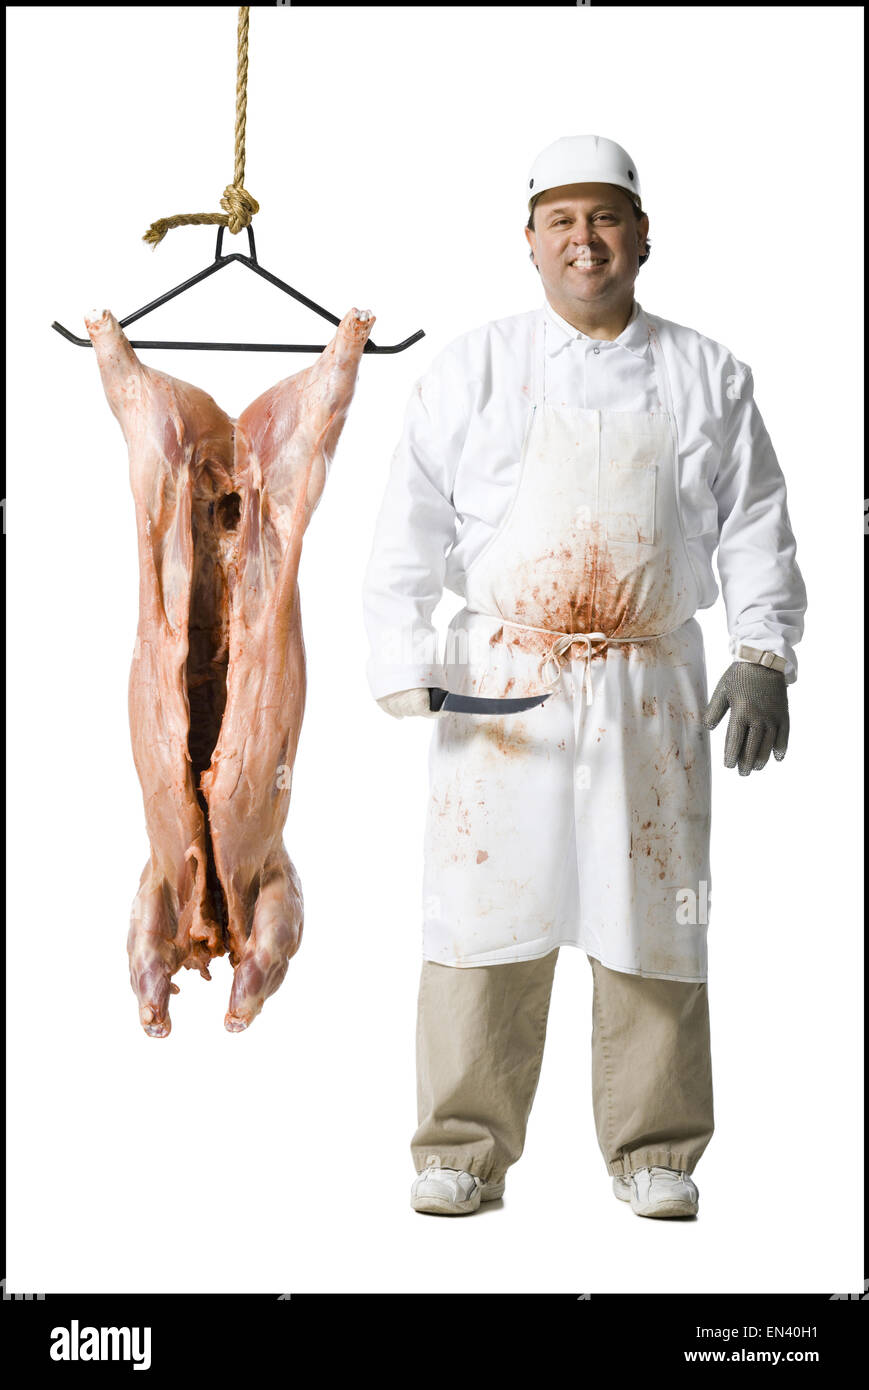 El carnicero de pie con la cuchilla y carcasa colgante Foto de stock